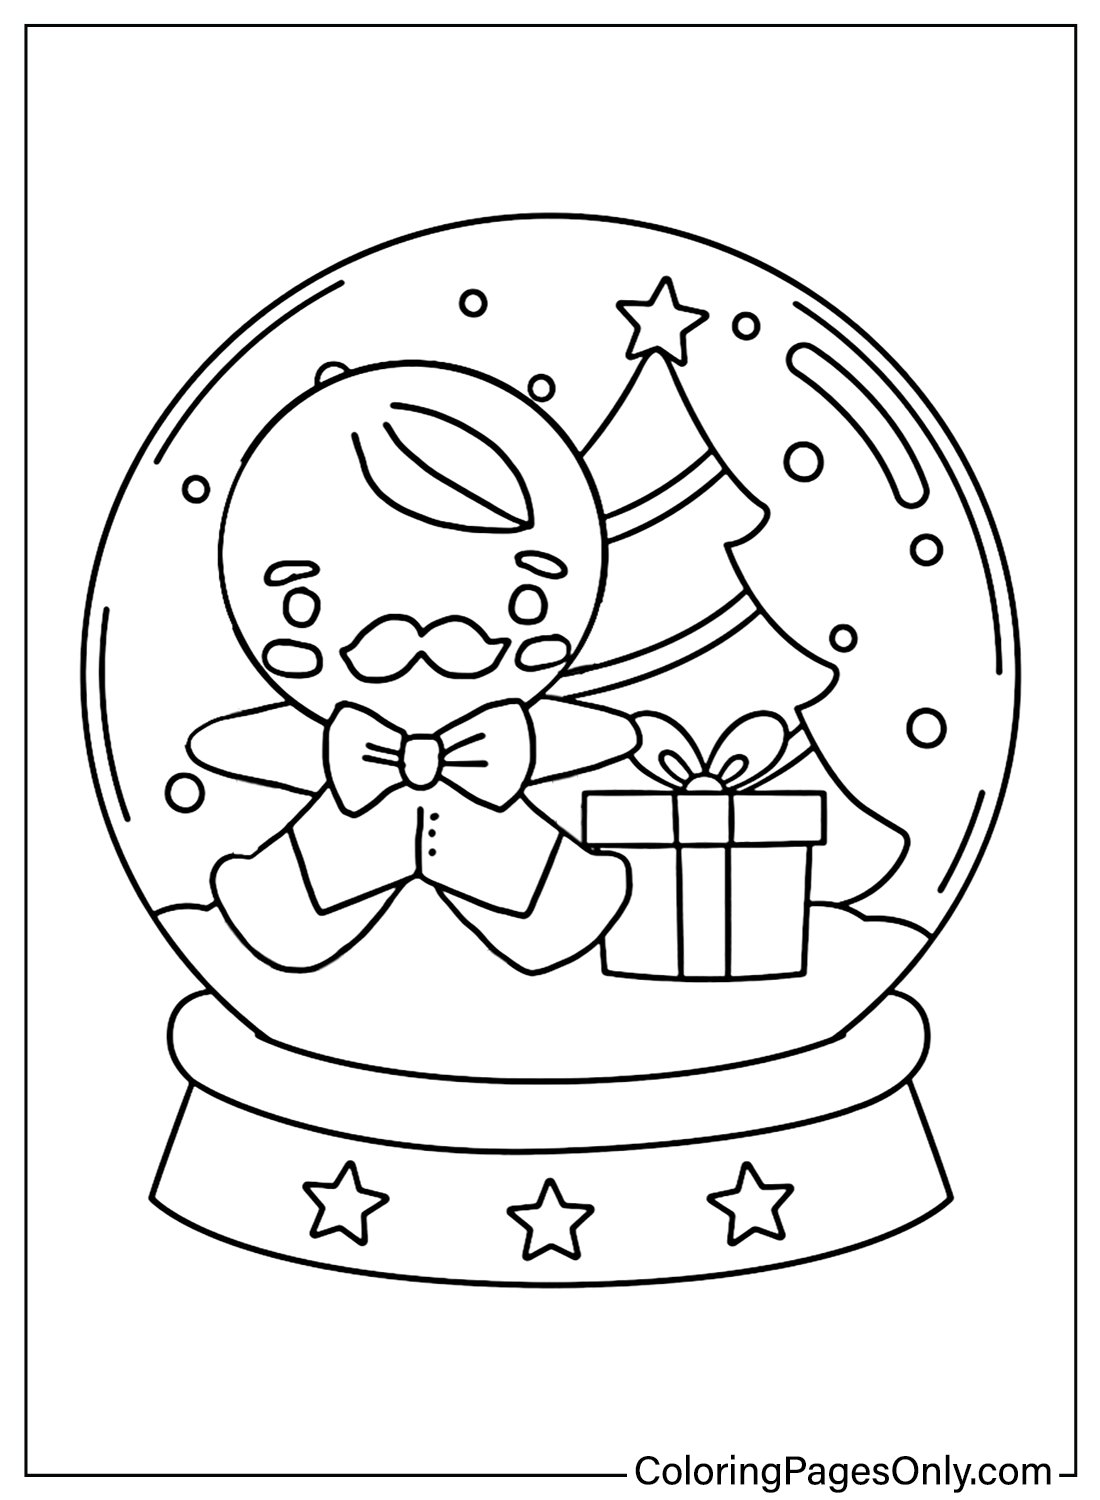 Página para colorear del hombre de jengibre con globo de nieve de Gingerbread Man